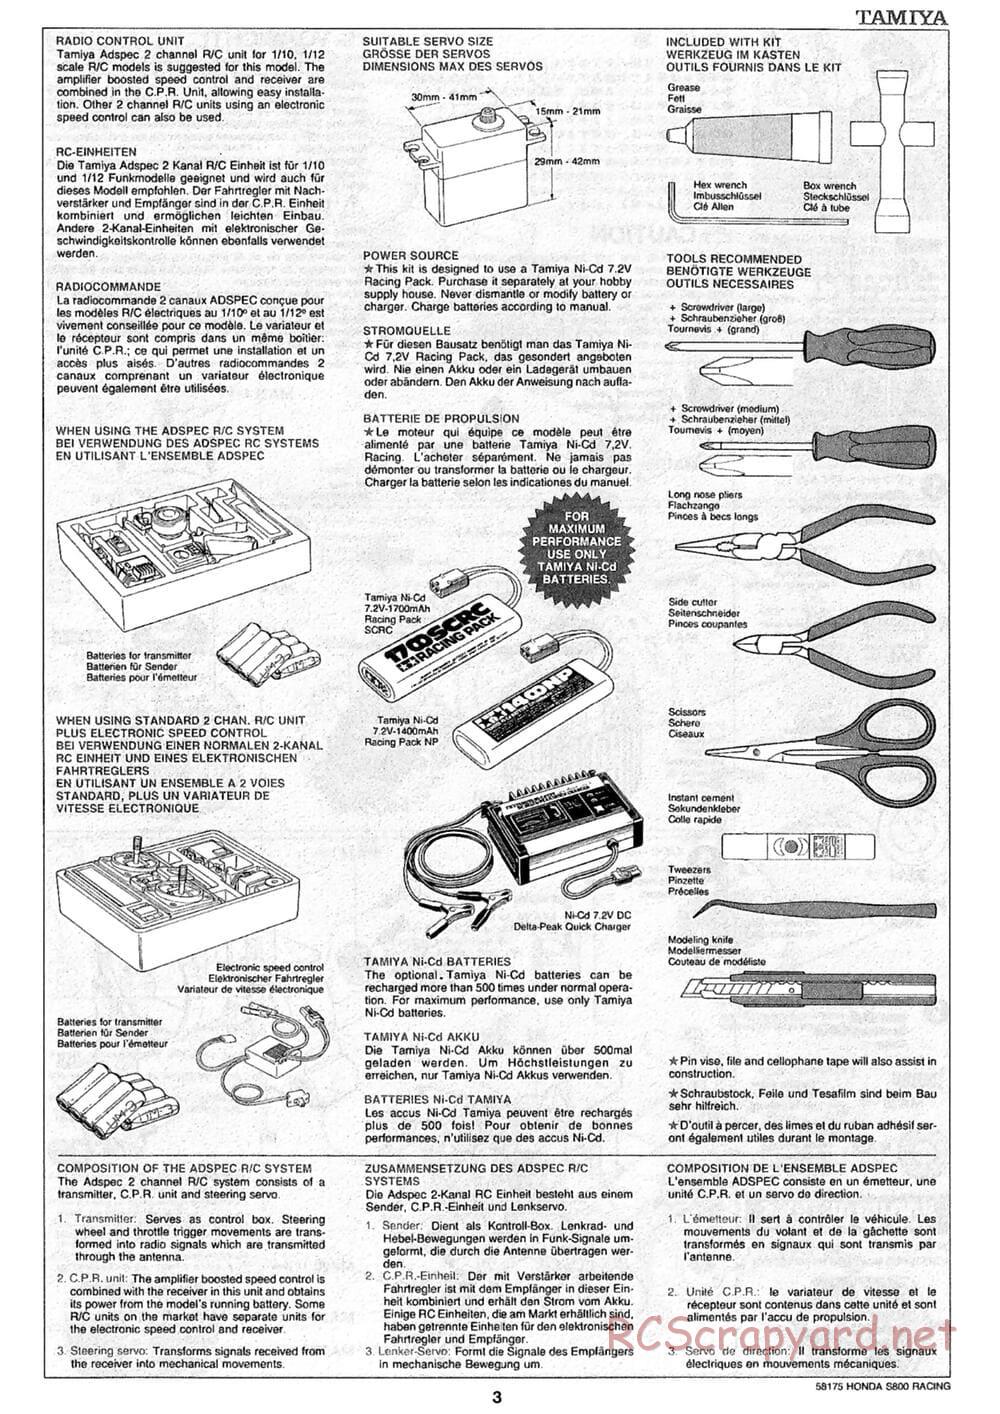 Tamiya - Honda S800 Racing - M02 Chassis - Manual - Page 3